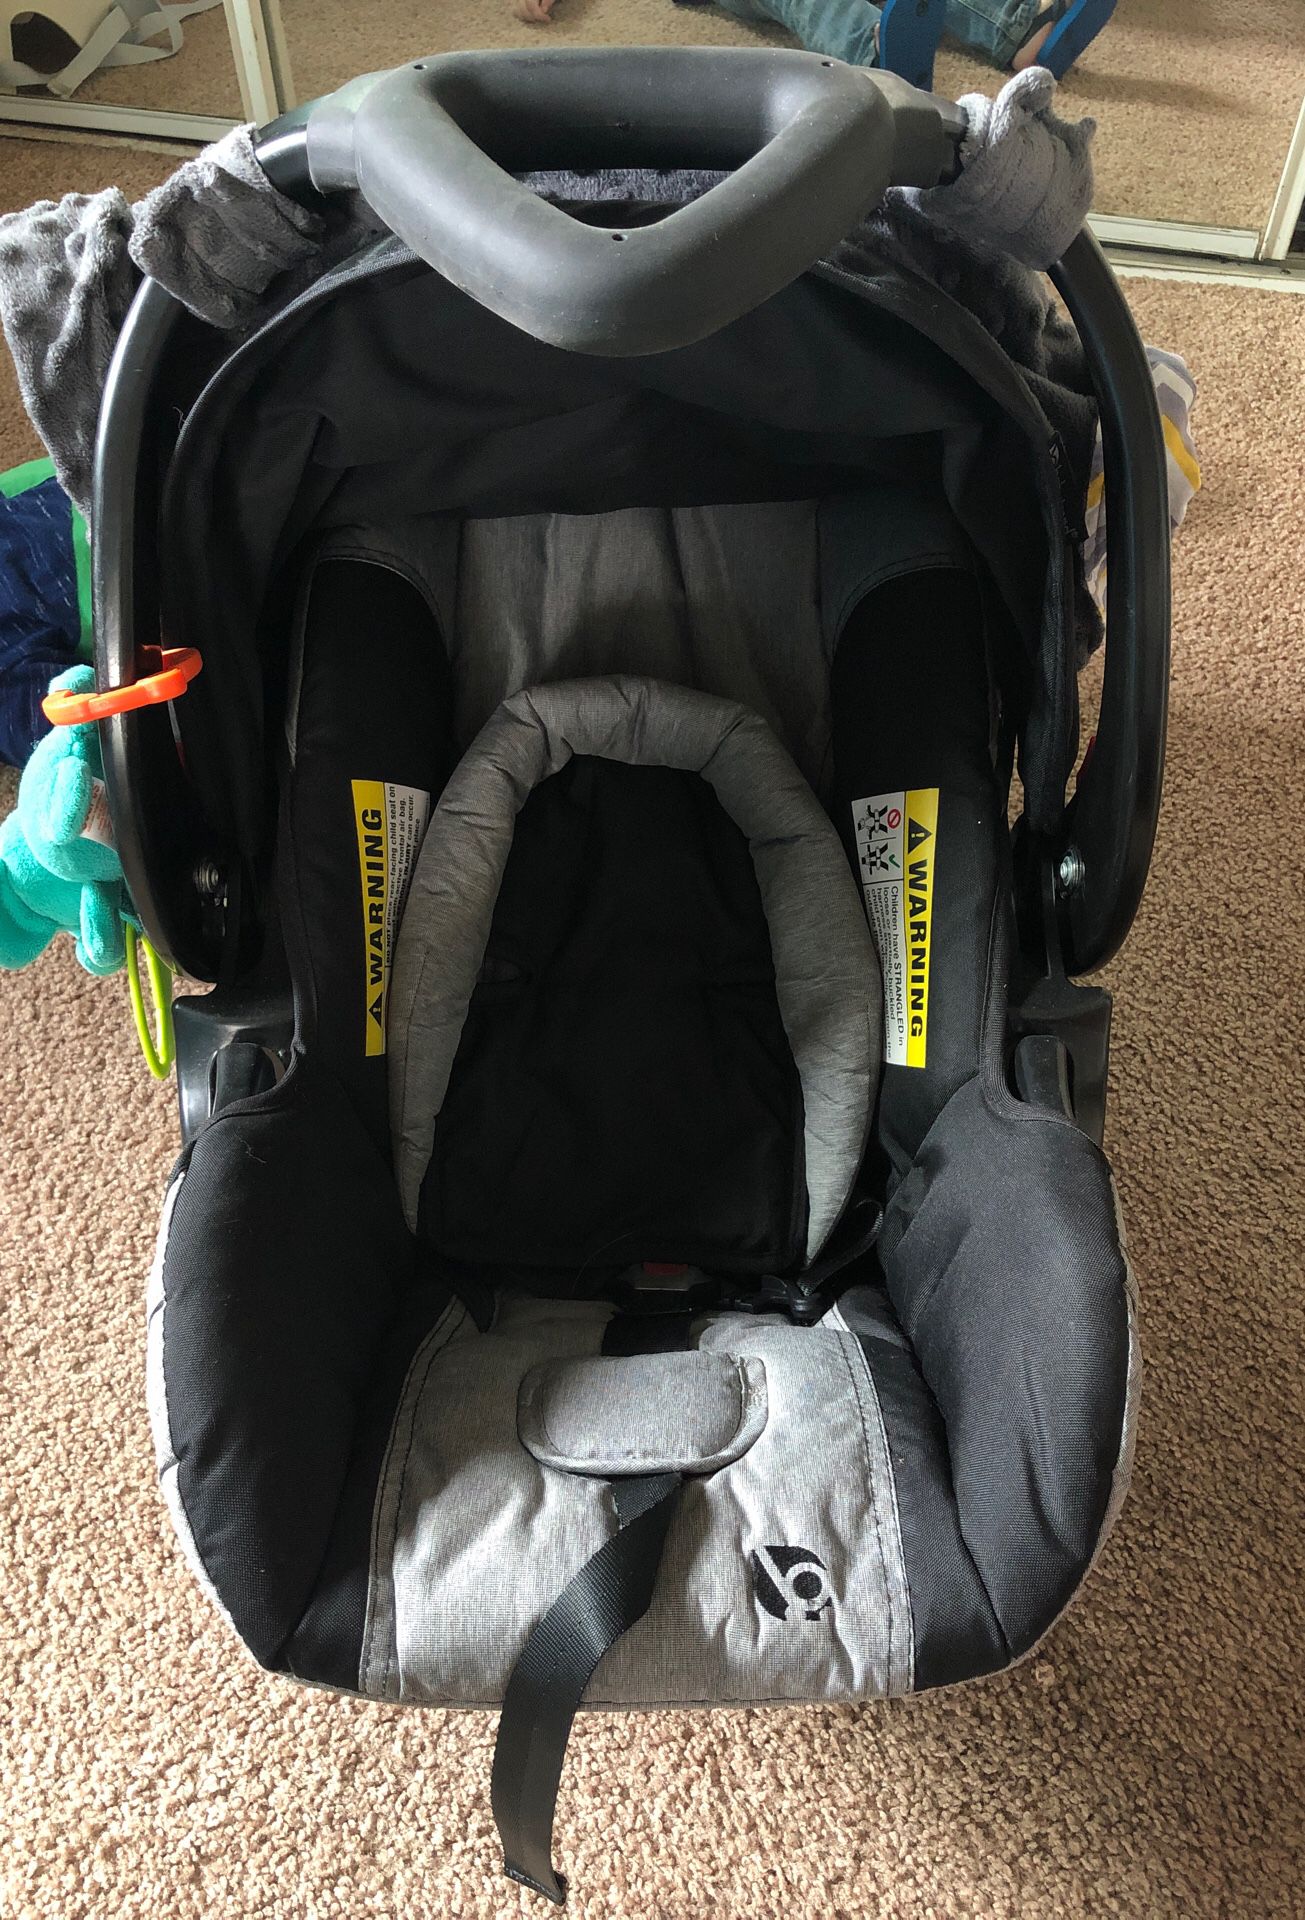 Babytrend EZ Flex-Loc 30 Infant Car Seat Carrier